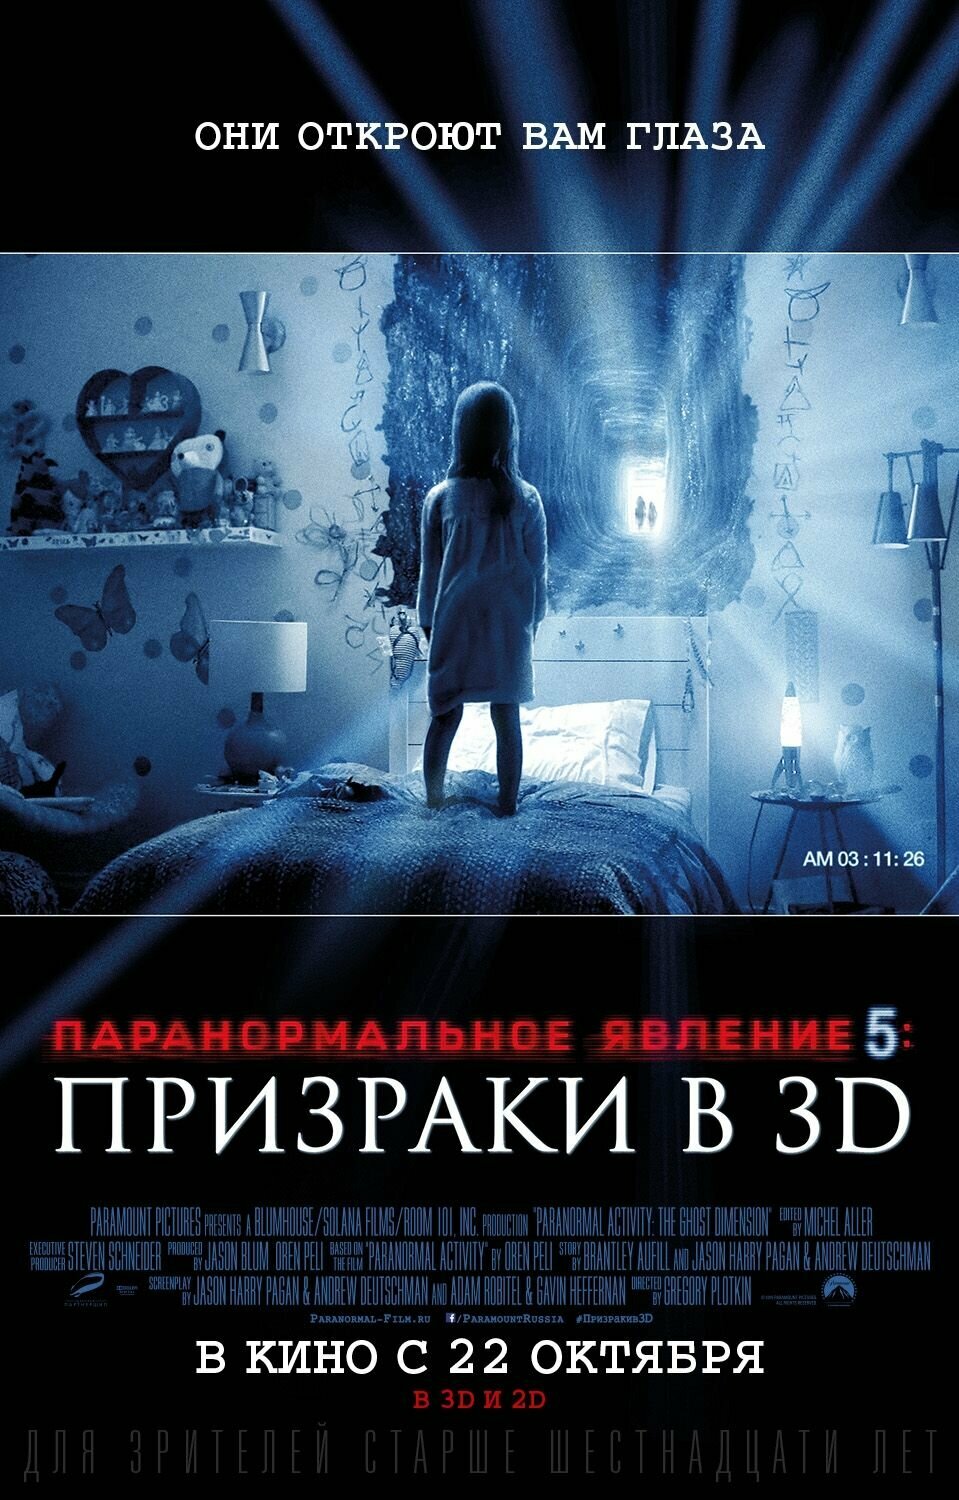 Паранормальное явление 5: Призраки (2015) (DVD-R)